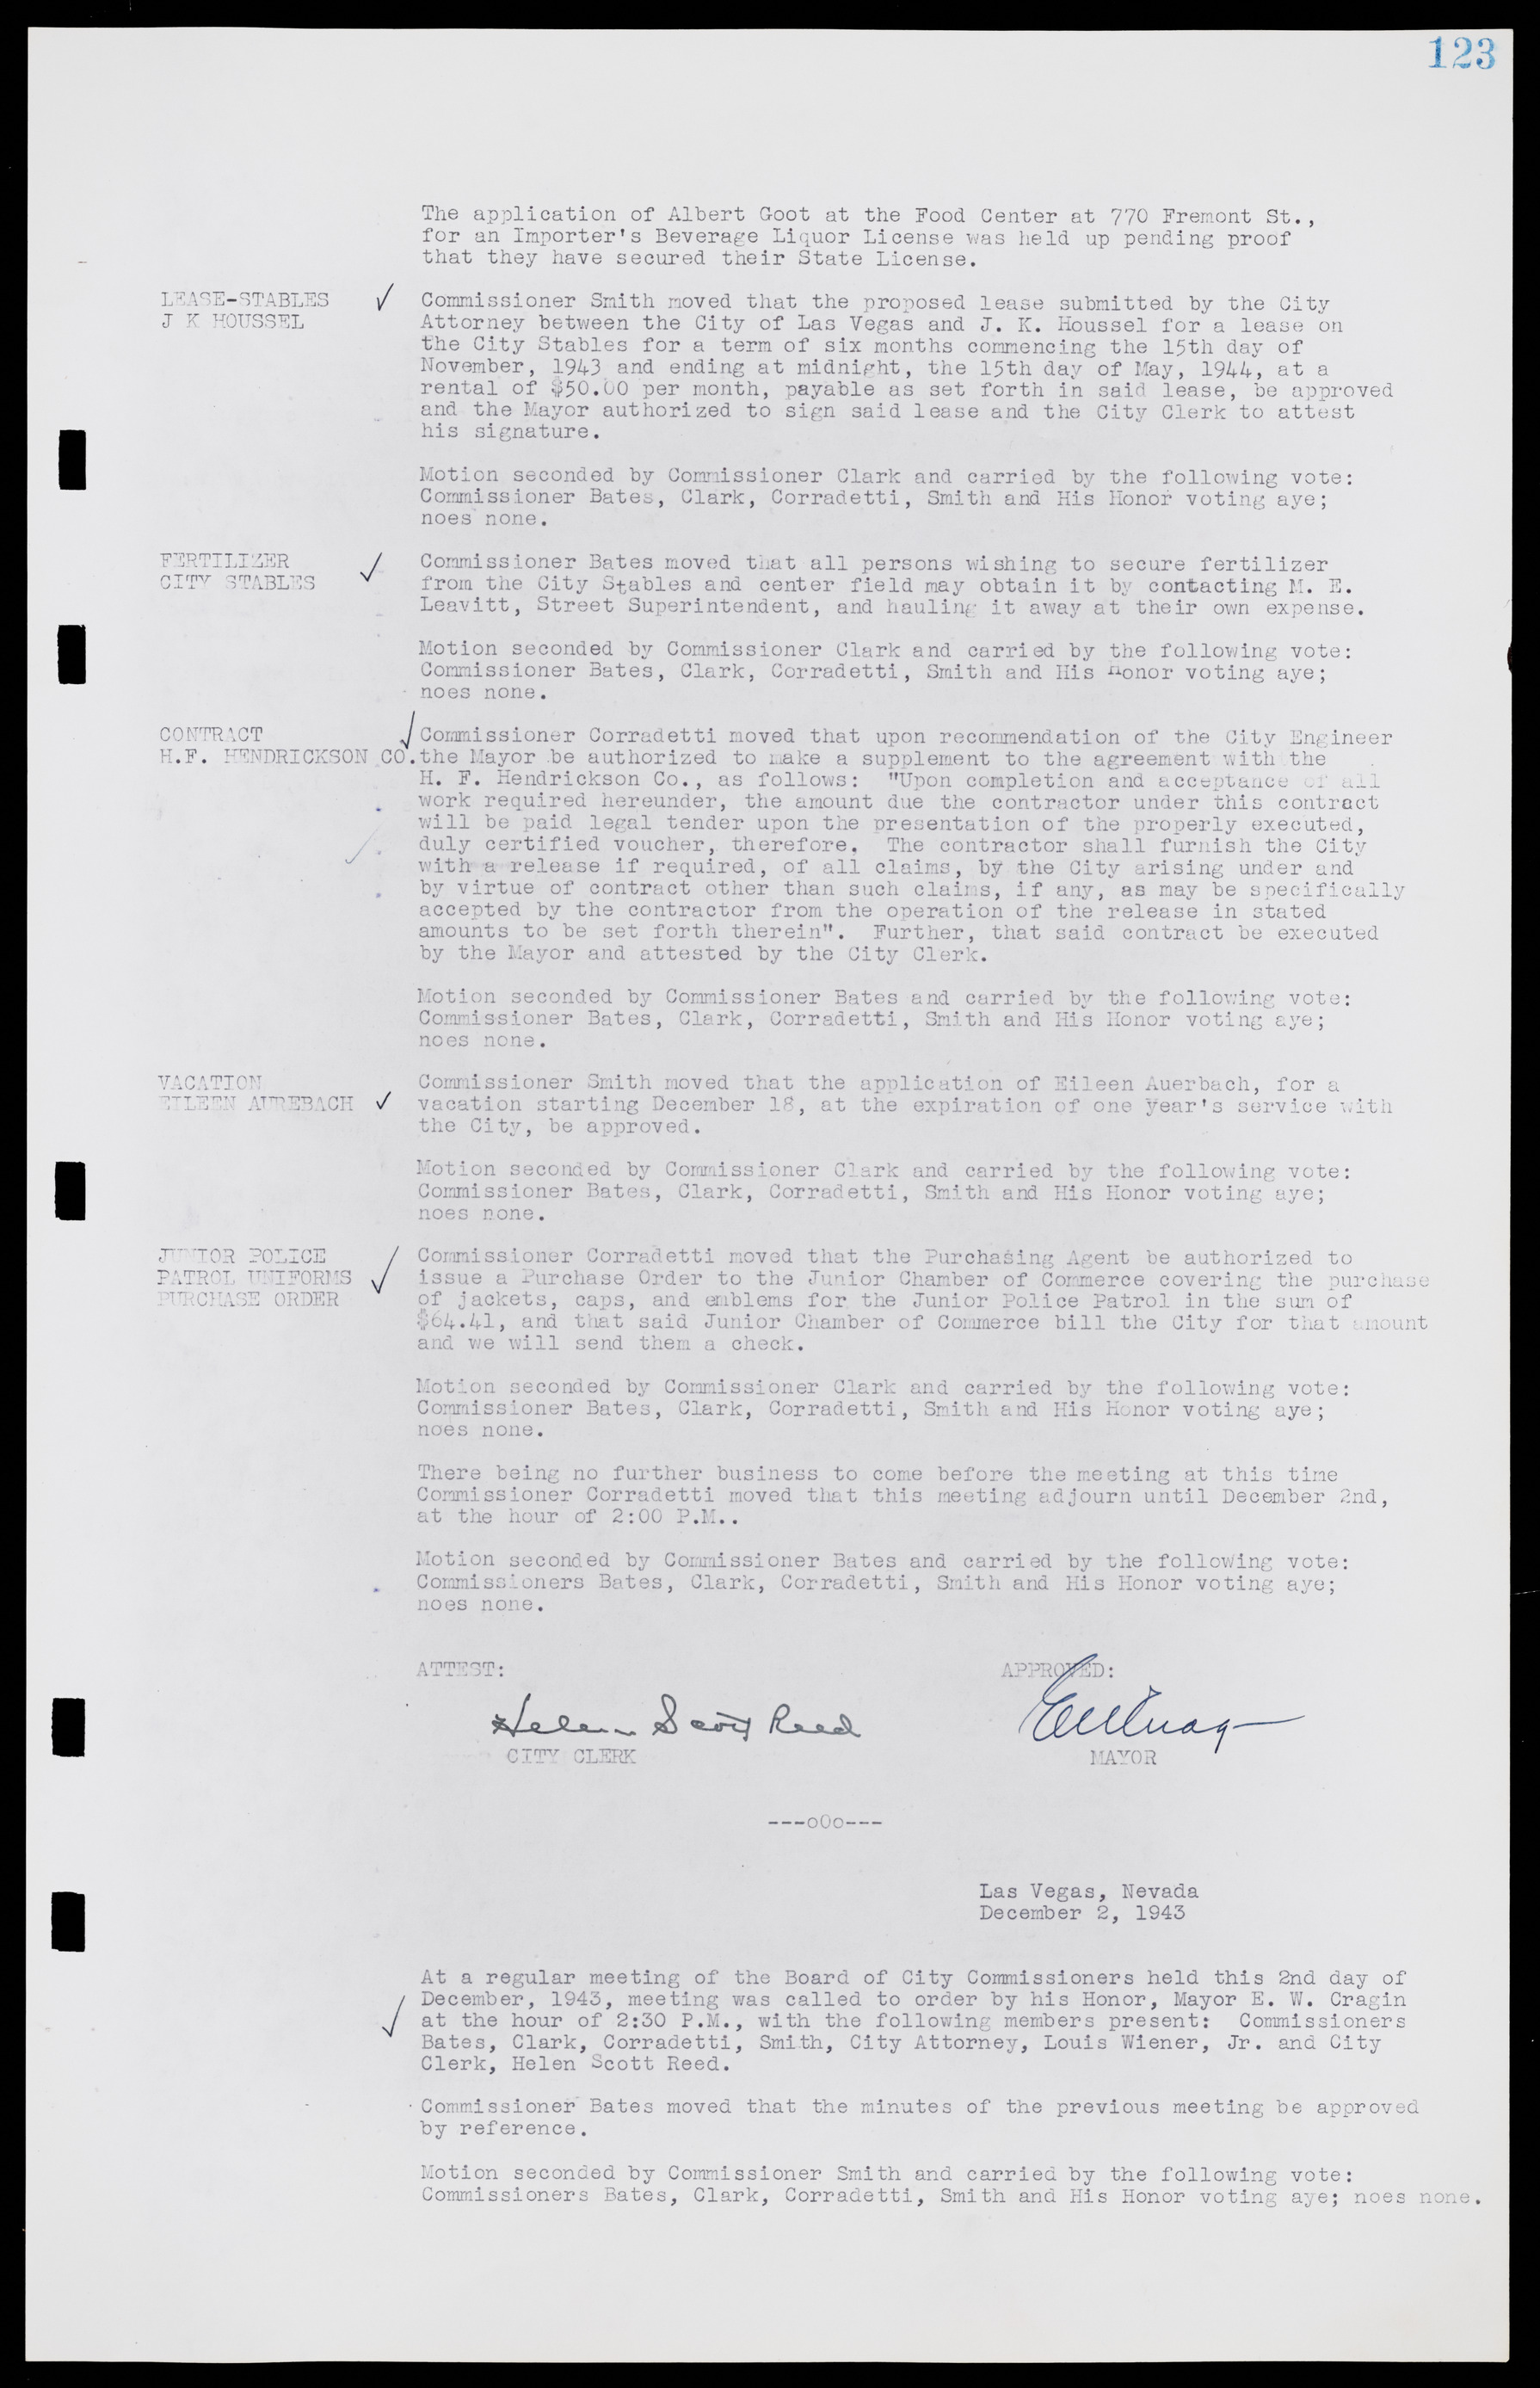 Las Vegas City Commission Minutes, August 11, 1942 to December 30, 1946, lvc000005-137